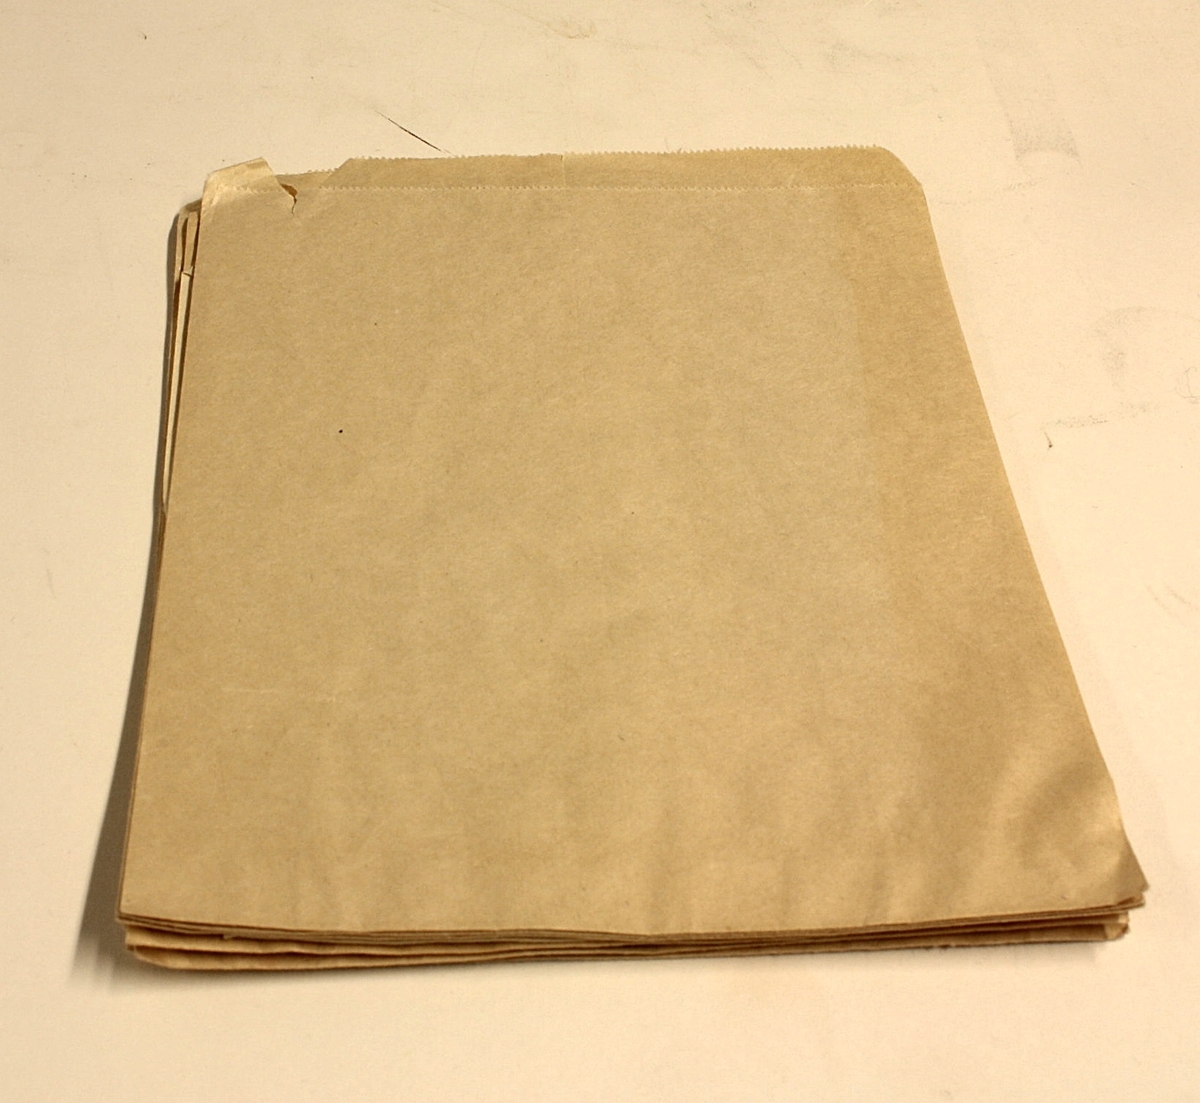 7 stykk rektangulære poser i glatt, brunt papir. Gjerne brukt i forbindelse med salg av søtsaker ol.